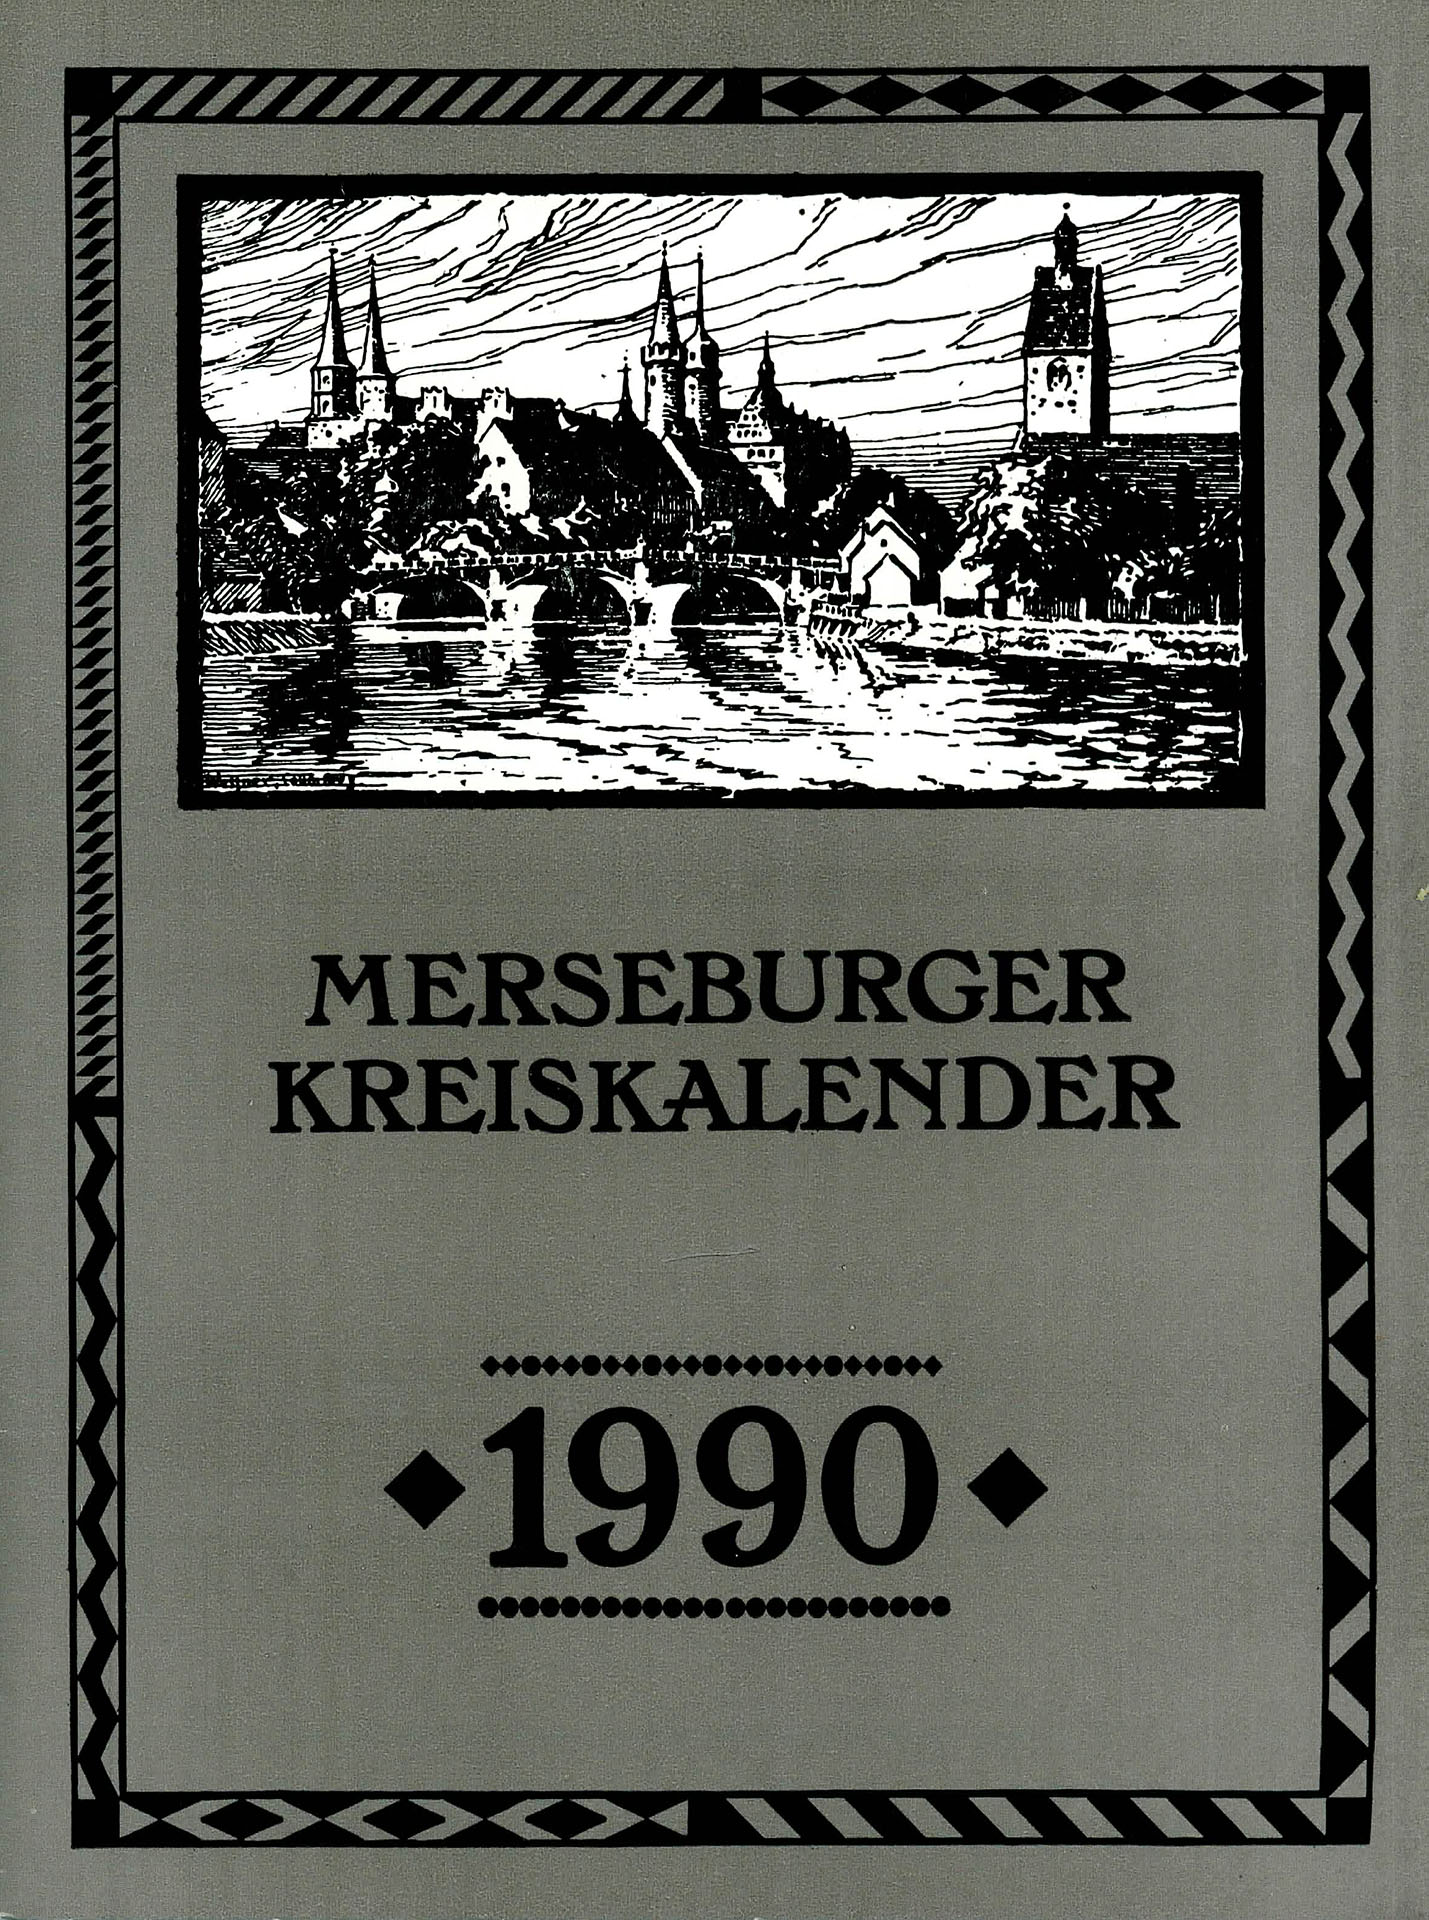 Merseburger Kreiskalender 1990 - Kleinbauer, Dieter / Kunze, Anke